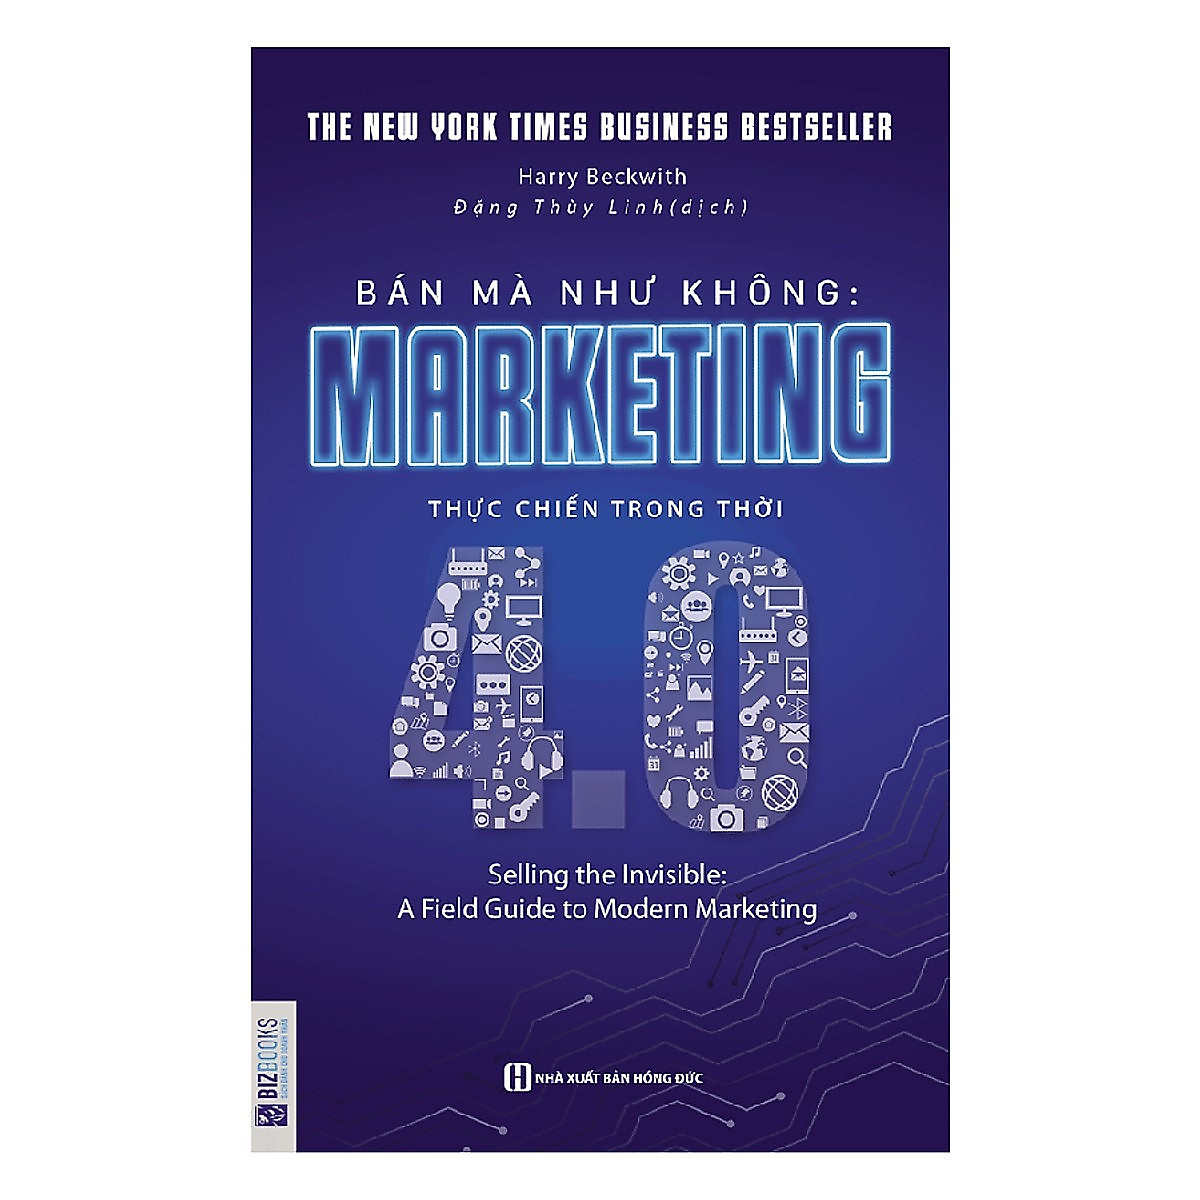 Combo Bộ 2 Cuốn Chiến Thuật Marketing Đặc Sắc: Marketing Du Kích - 30 Chiến Lược Thực Chiến + Marketing Thực Chiến Trong Thời 4.0 - MinhAnBooks